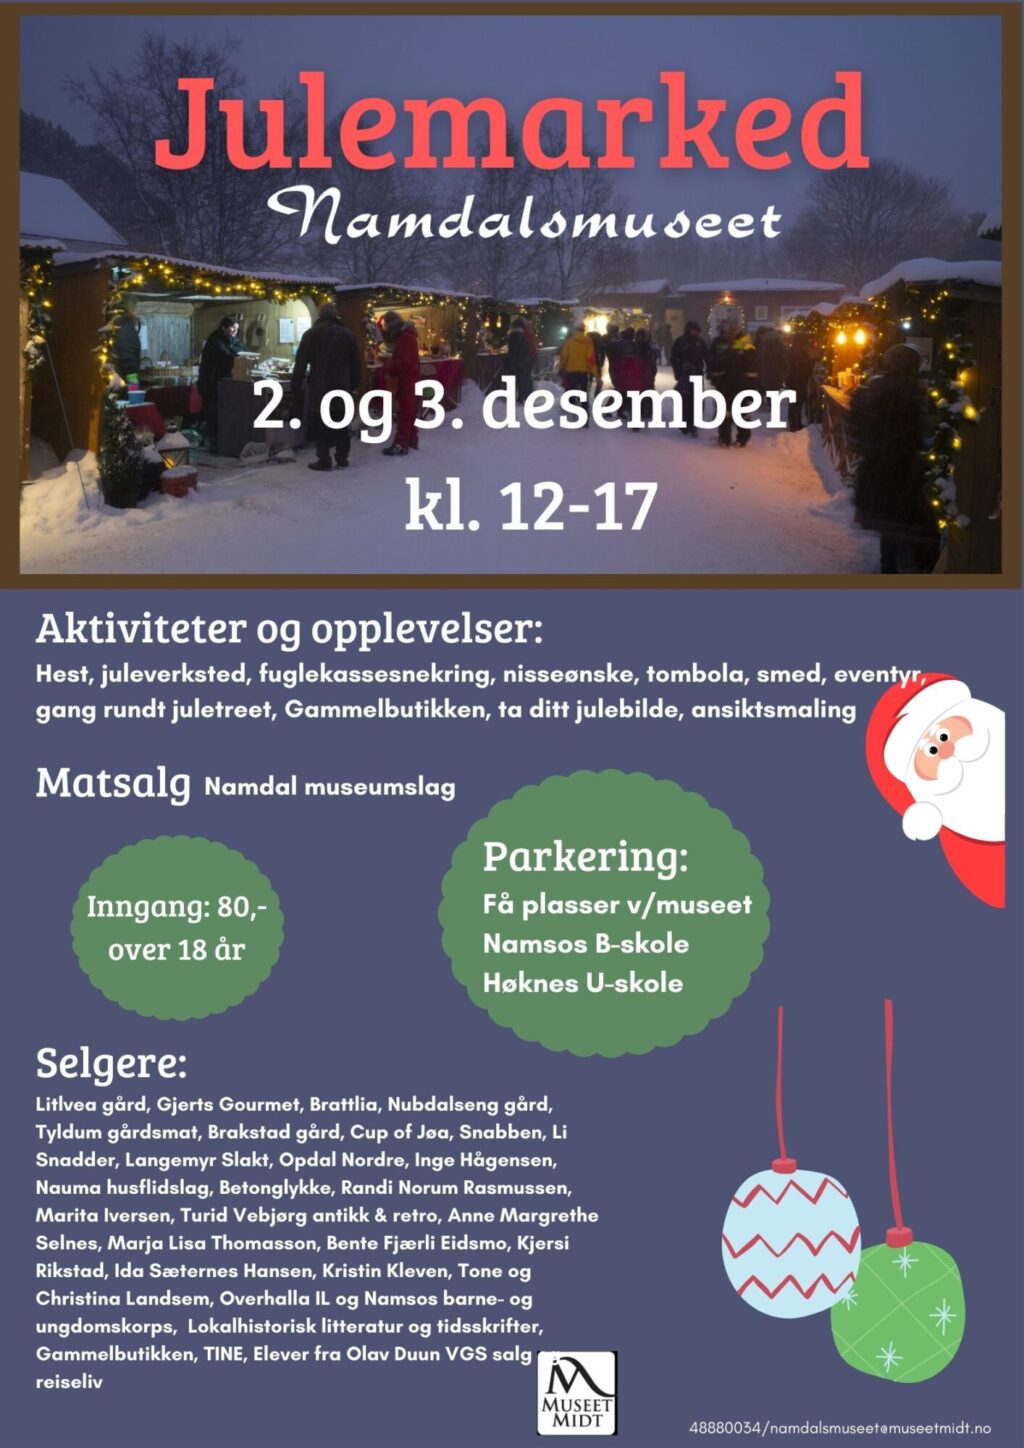 Plakat for julemarked med informasjon om innhold med aktiviteter og selgere